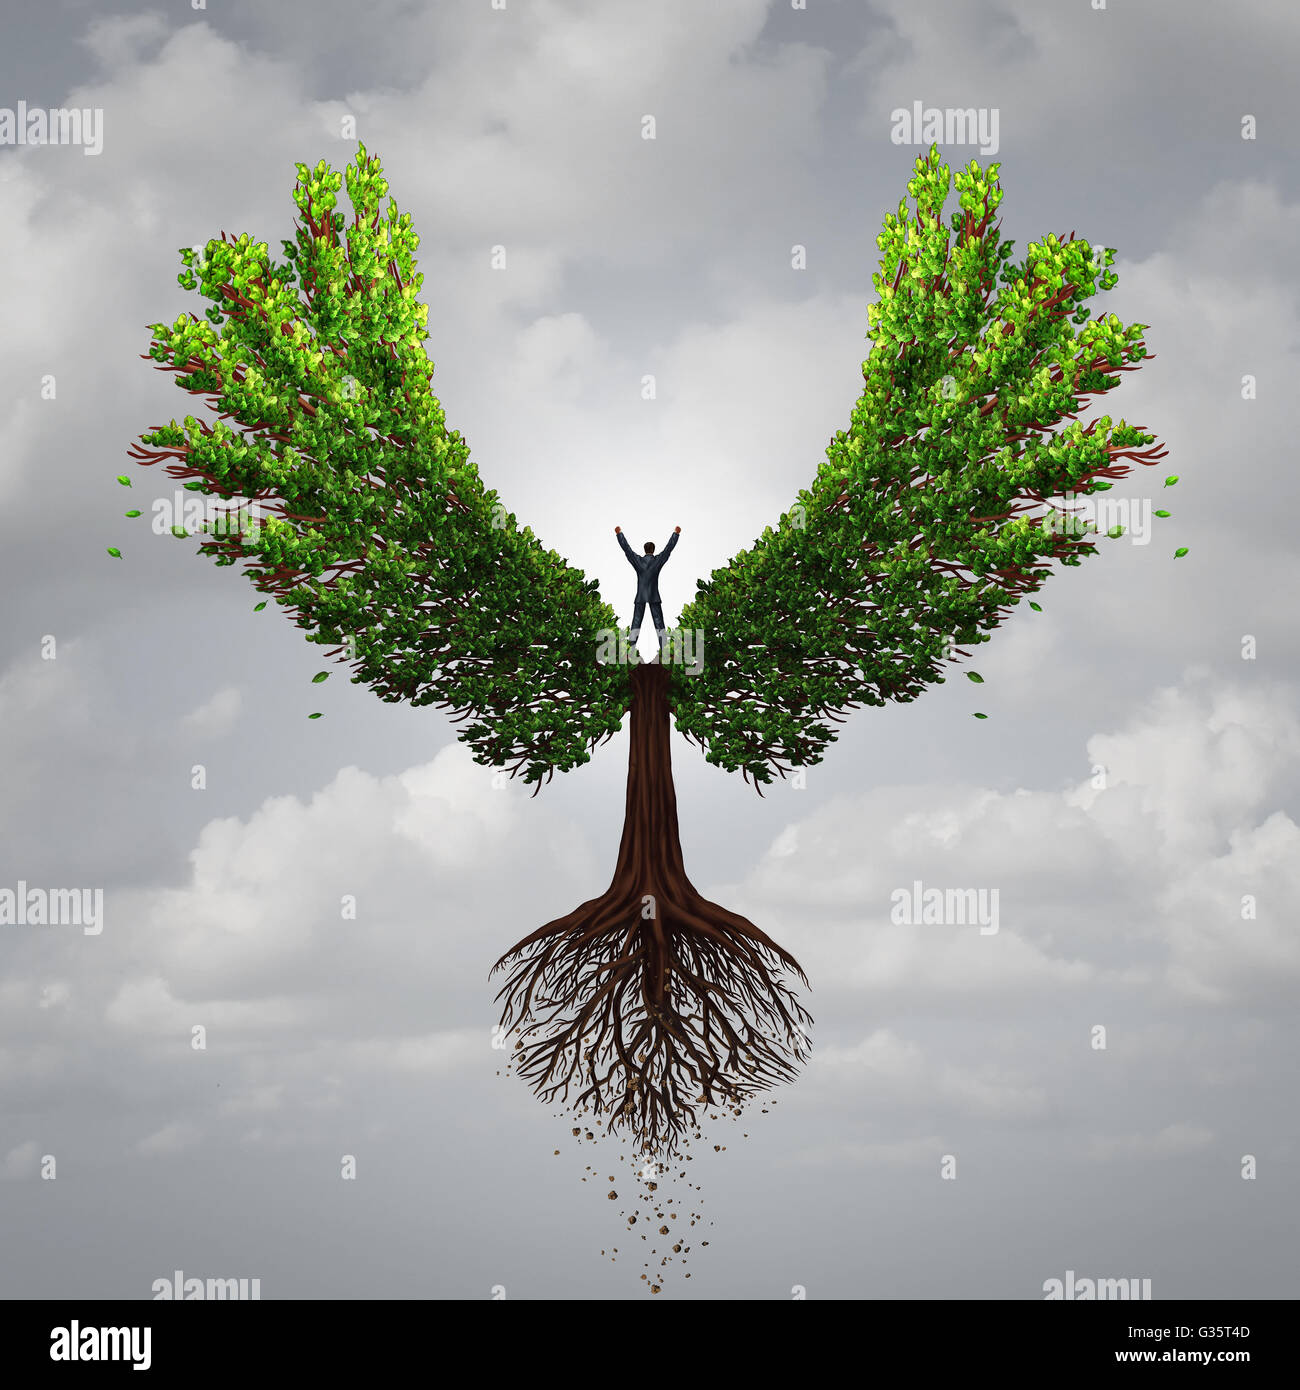 Concepto de oportunidad de controlar tu vida como una persona tomando las riendas y controlar un árbol con alas volando hacia una meta para tener éxito como un símbolo de la psicología del pensamiento positivo en un estilo de ilustración 3D. Foto de stock